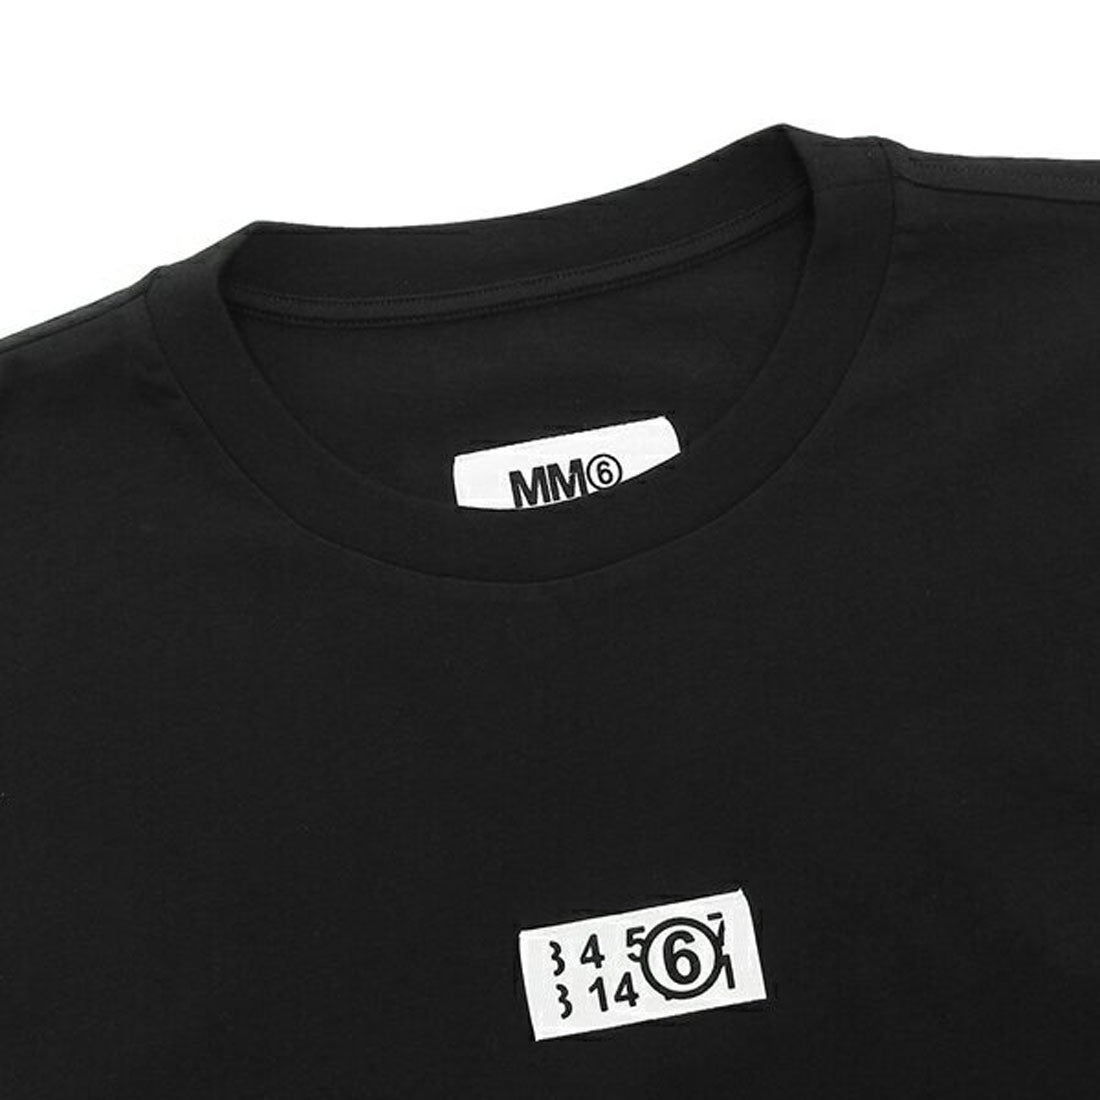 エムエムシックス メゾン マルジェラ MM6 Maison Margiela Tシャツ 半袖カットソー トップス ブラック メンズ レディース MM6  Maison Margiela S52GC0275 S24312 900 （ブラック）